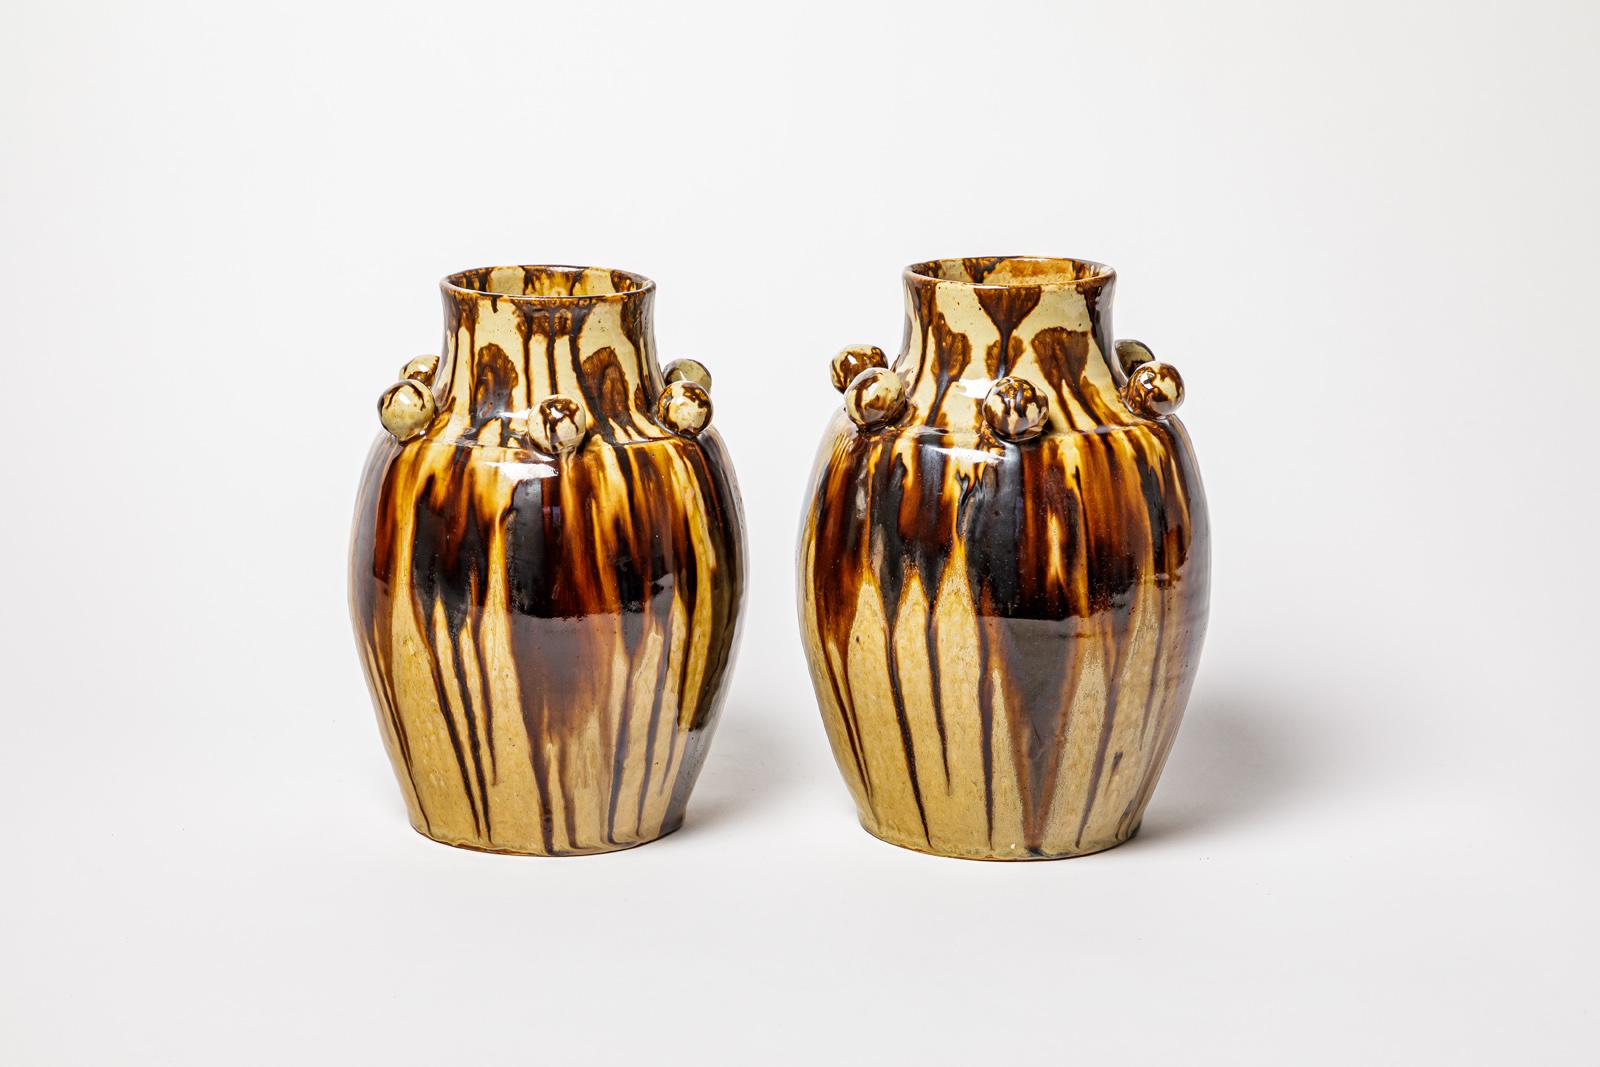 Joseph Talbot 

Grande paire de vases en céramique art déco

Design moderniste du 20e siècle Forme de la céramique

Condition originale parfaite.

Couleurs abstraites des émaux céramiques bruns

Signé sous la base

Hauteur 28 cm
Grand 18 cm